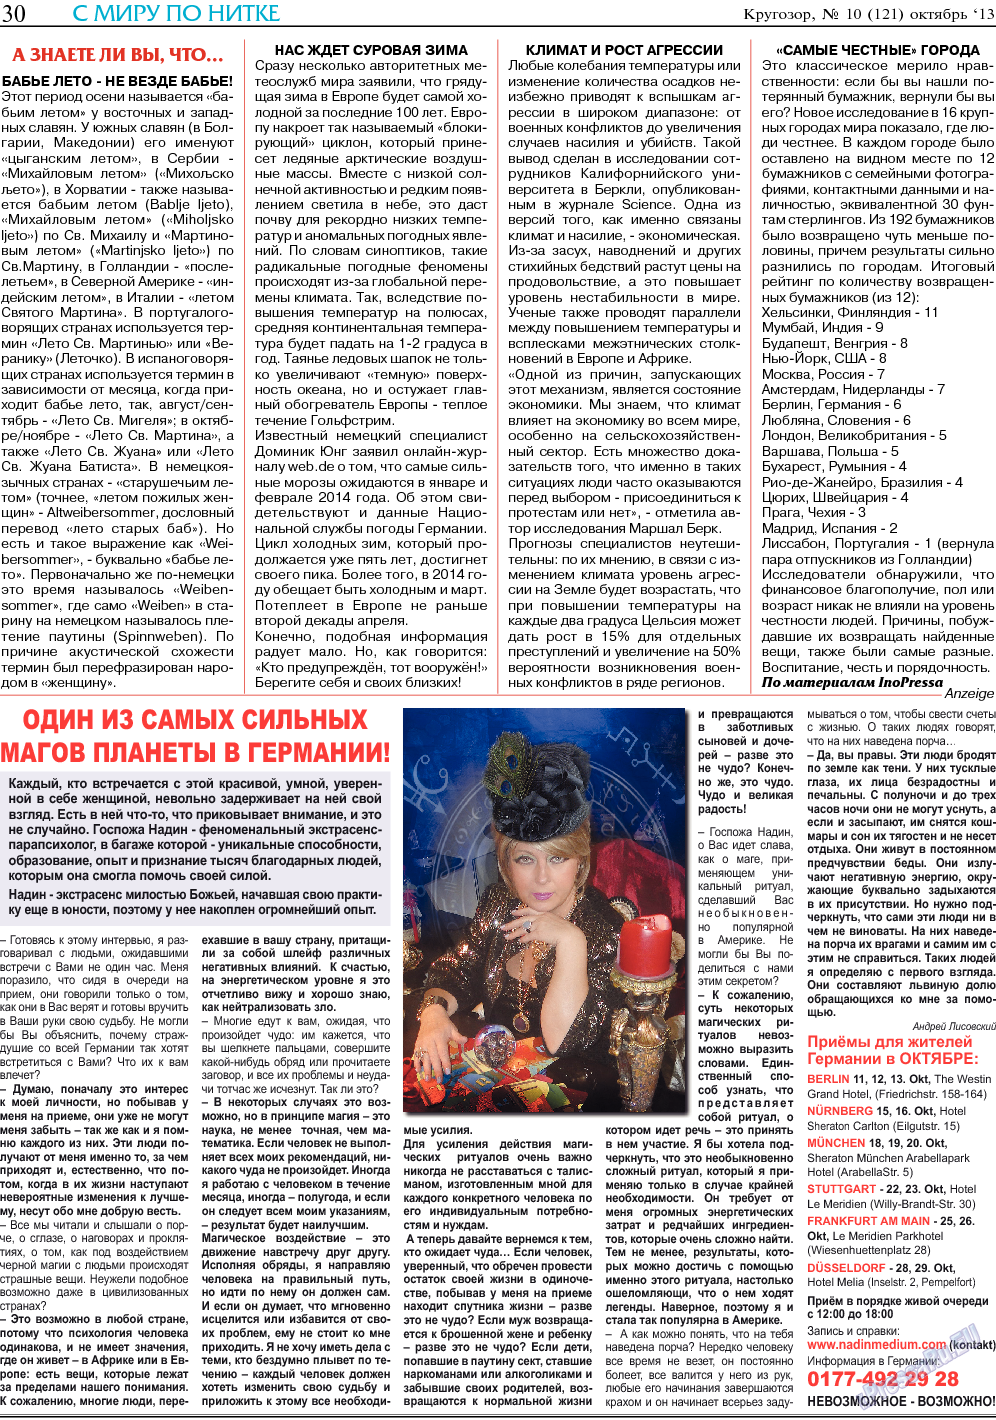 Кругозор, газета. 2013 №10 стр.30